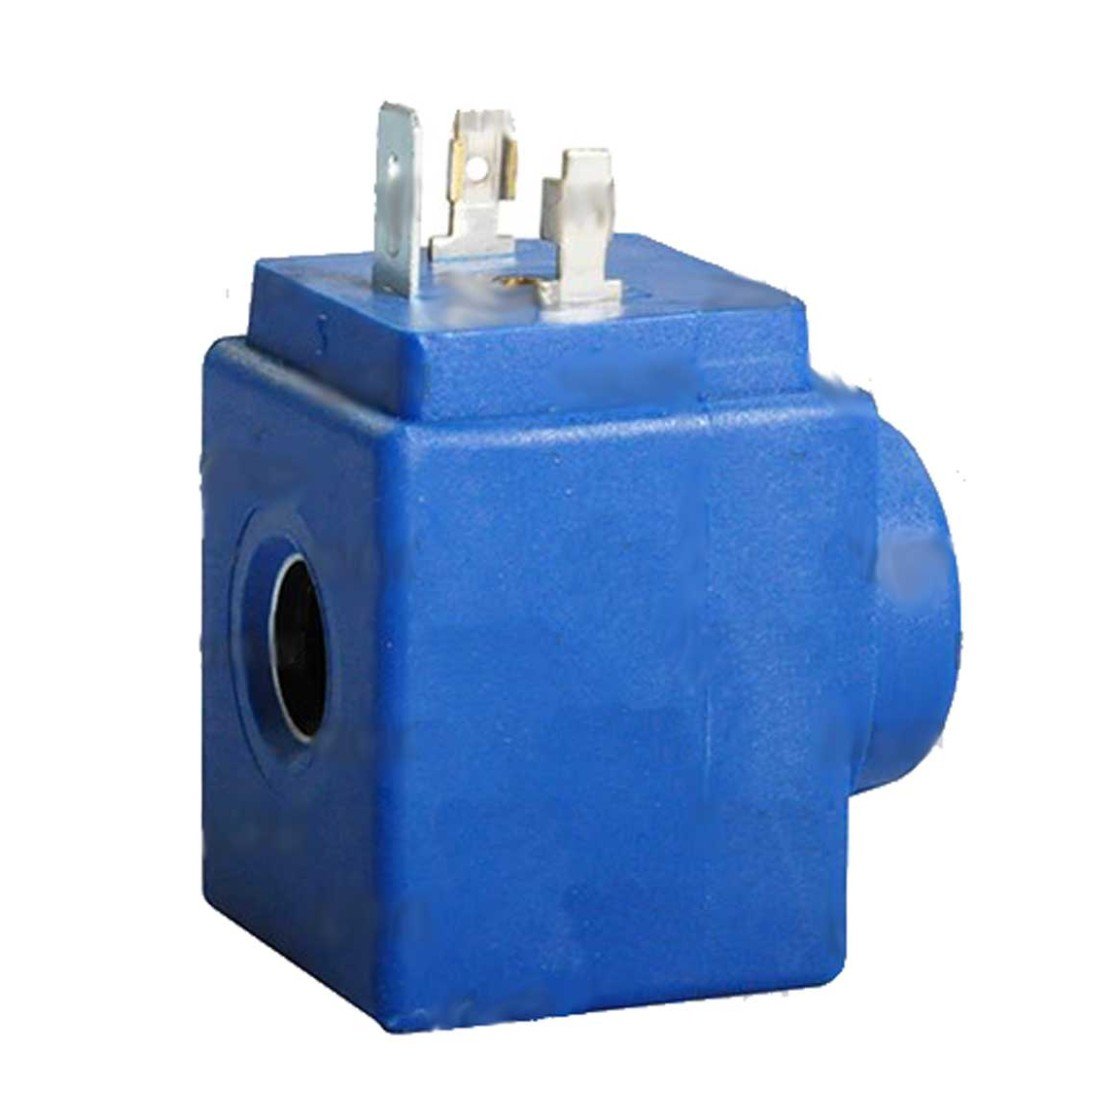 Electromagnetic valve coil CASTEL, HF2,9300/RA2, 24Vac,50/60Hz Šaldytuvų šaldiklių automobilinės buitinės pramoninės šaldymo įrangos dalys